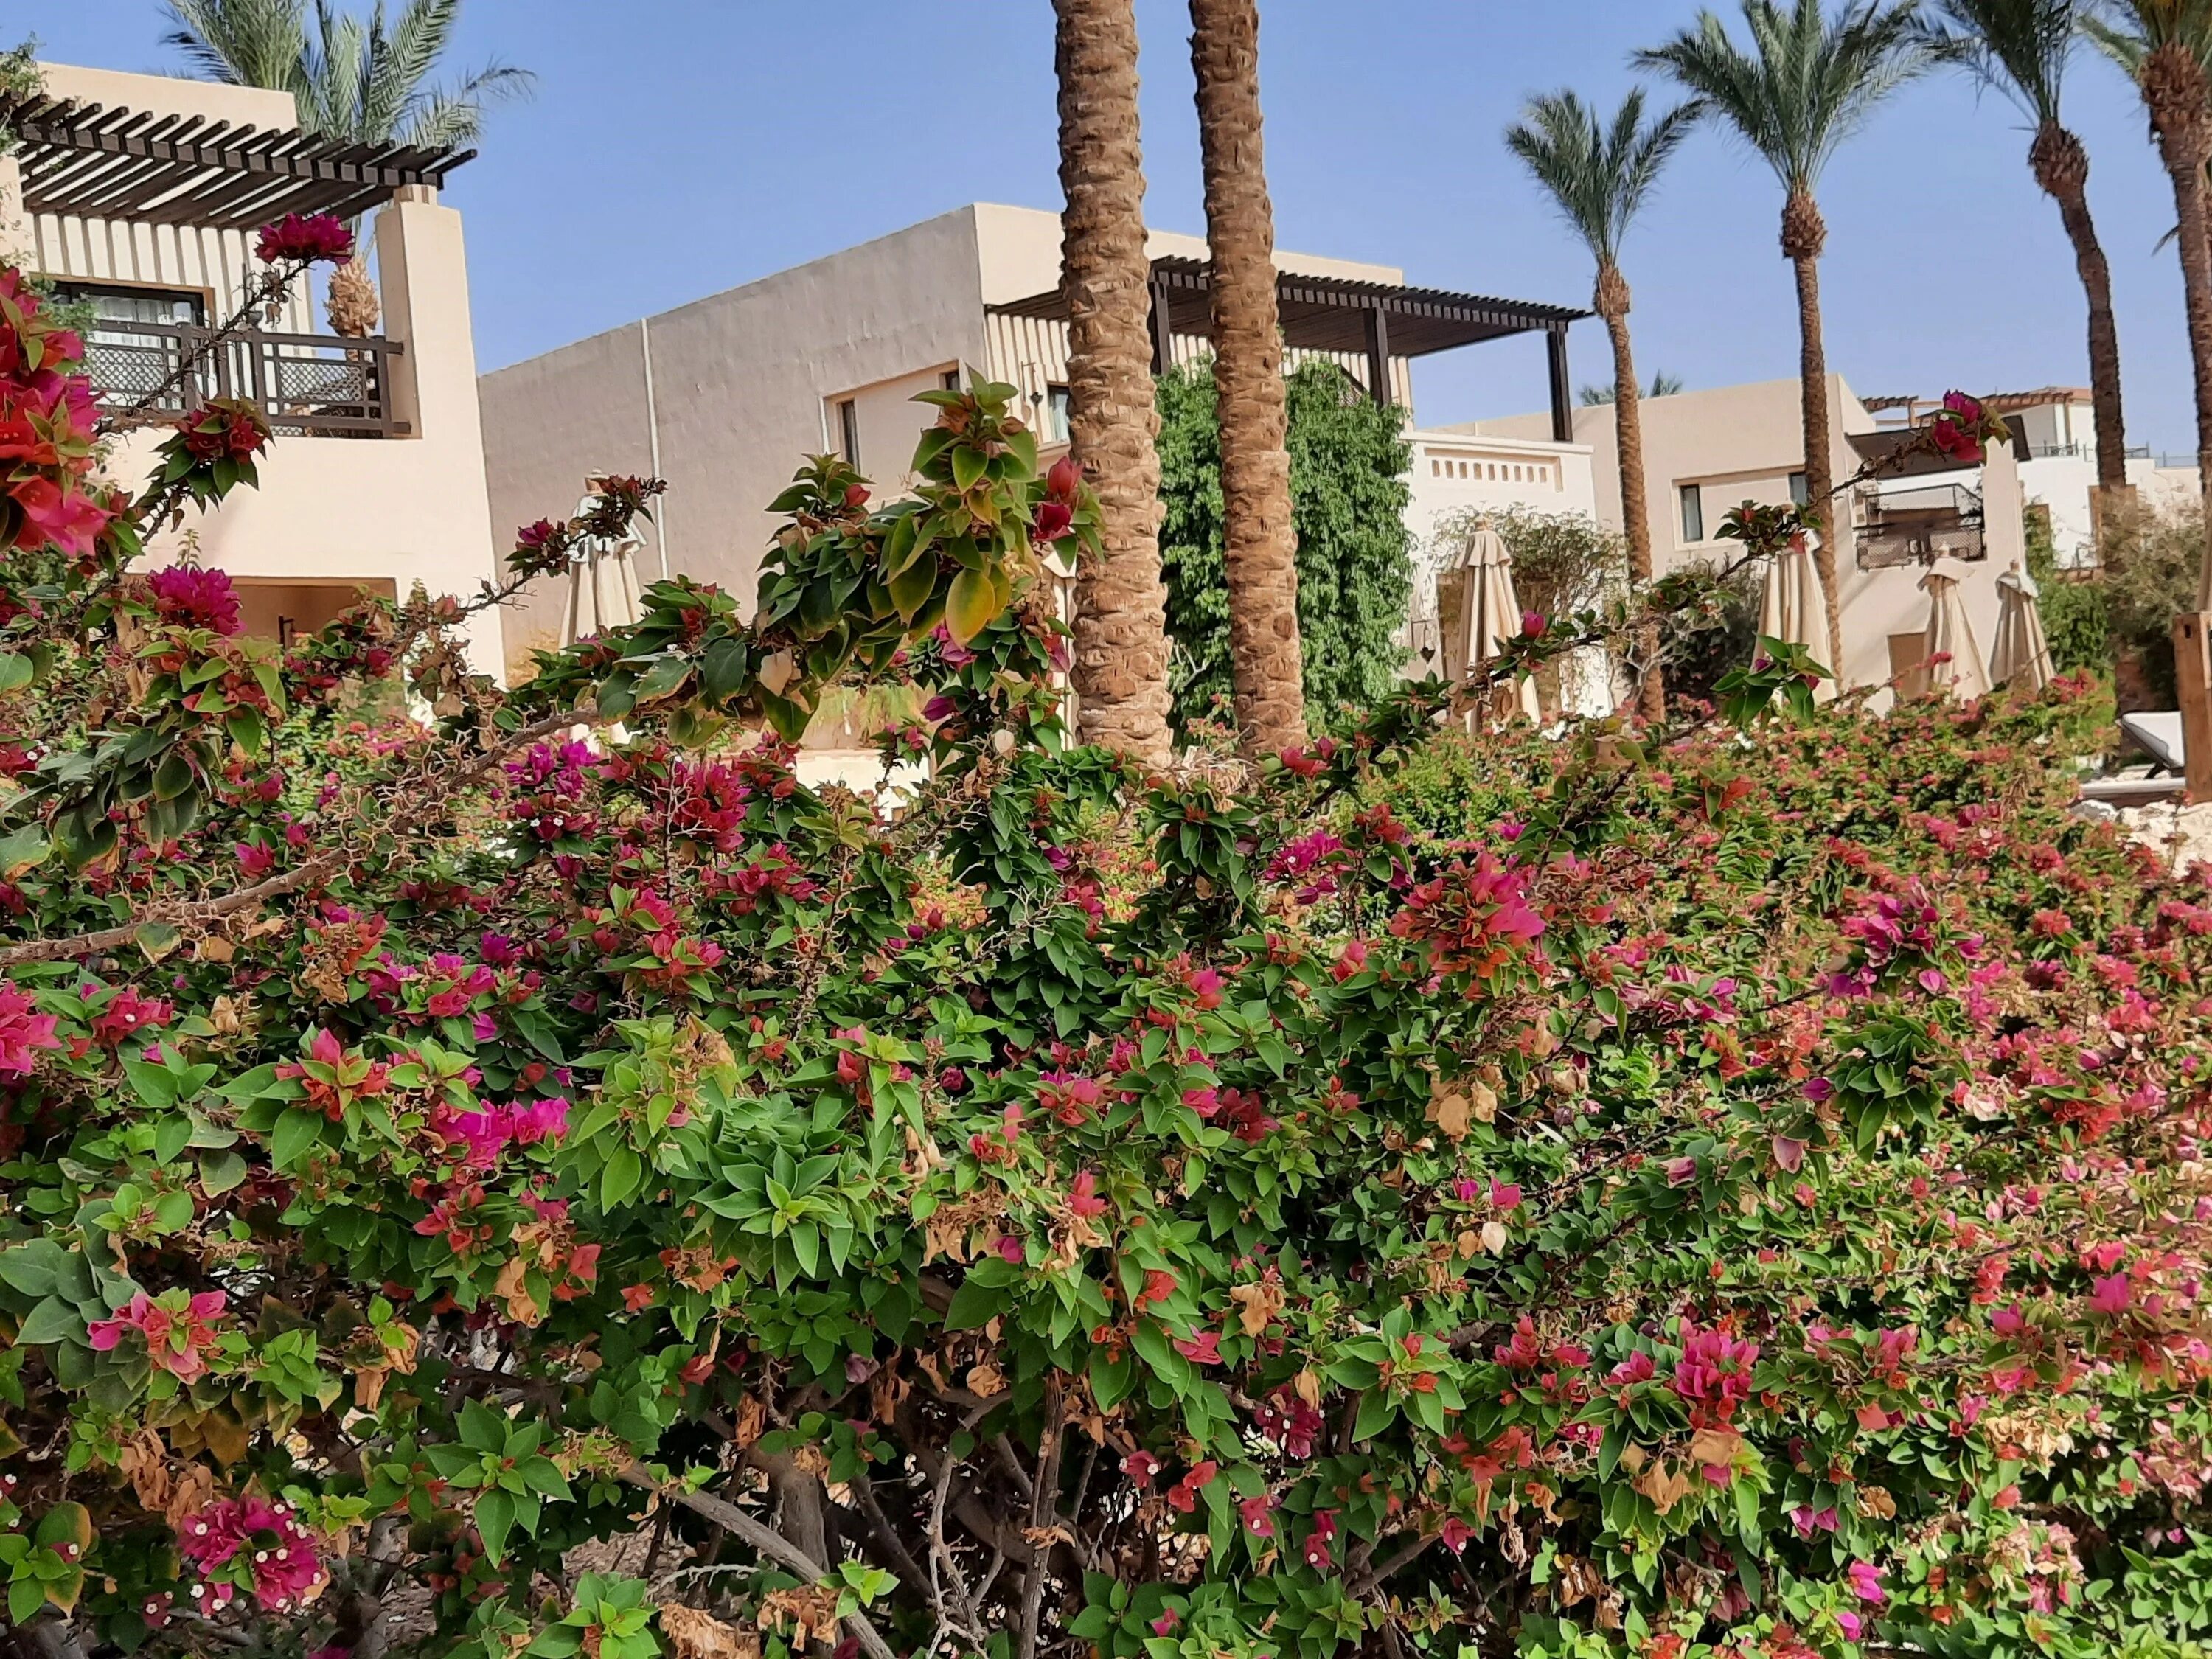 Отели шарма с коралловым рифом. Отель Grand Hotel Sharm 5. Гранд отель Шарм-Эль-Шейх 5. The Grand Hotel Sharm el Sheikh. Цветущие кусты в Шарм Эль Шейхе.